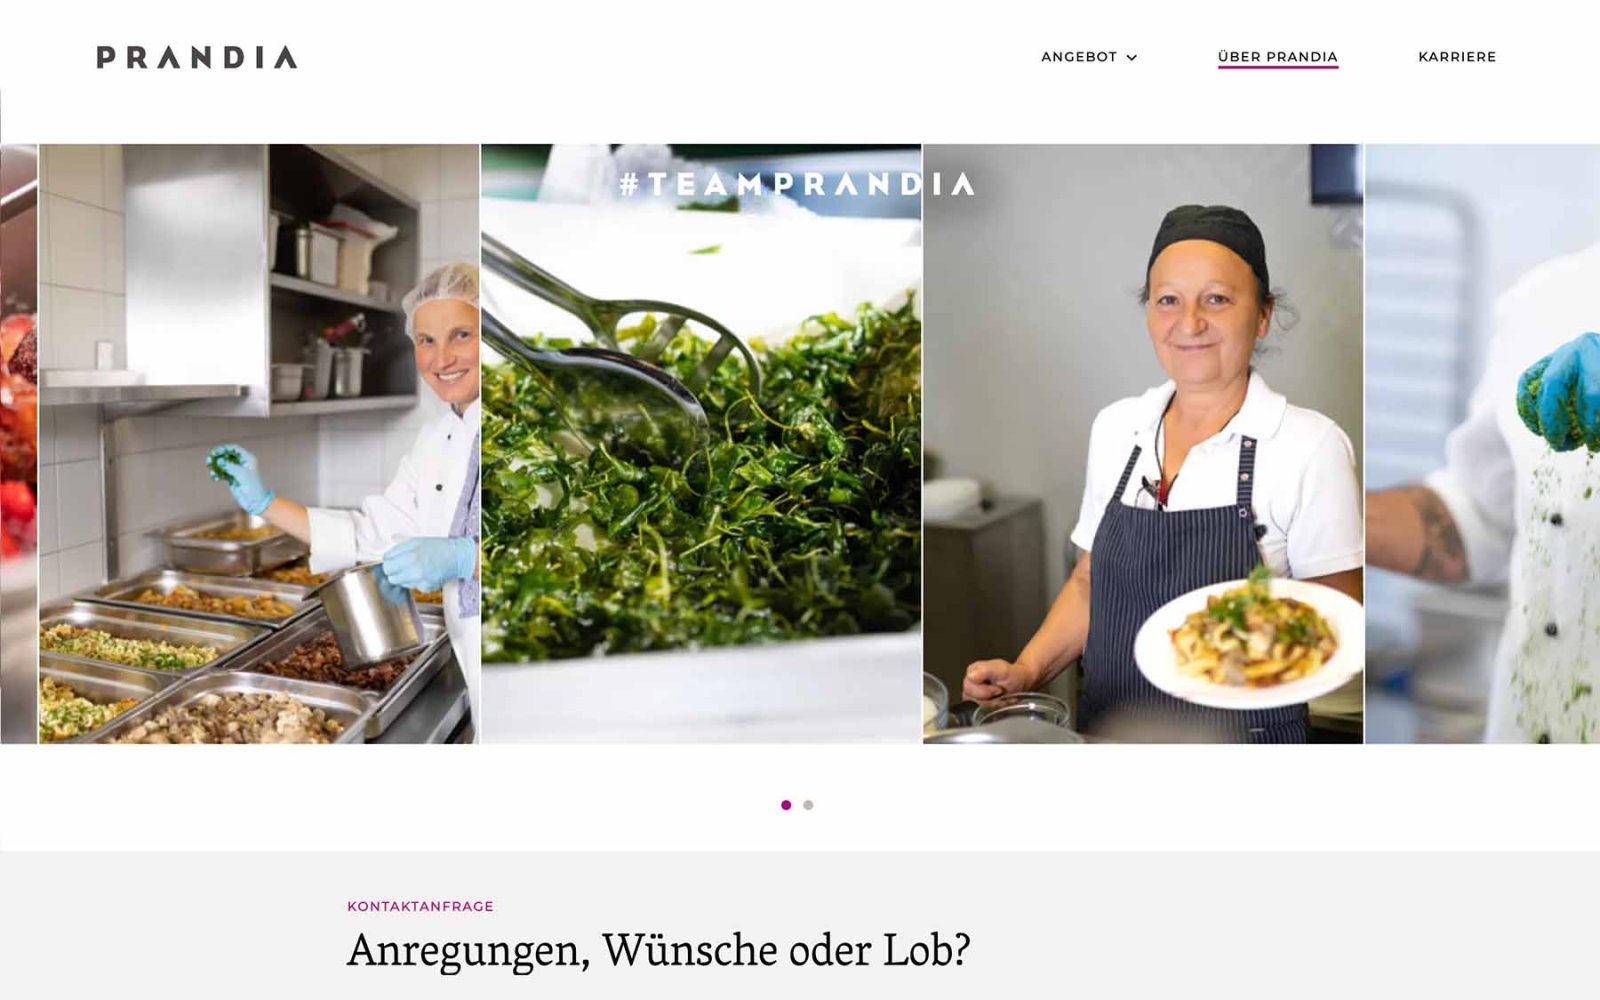 Gastronomie-Website Prandia – Team Prandia. Bildleiste mit Mitarbeitern.